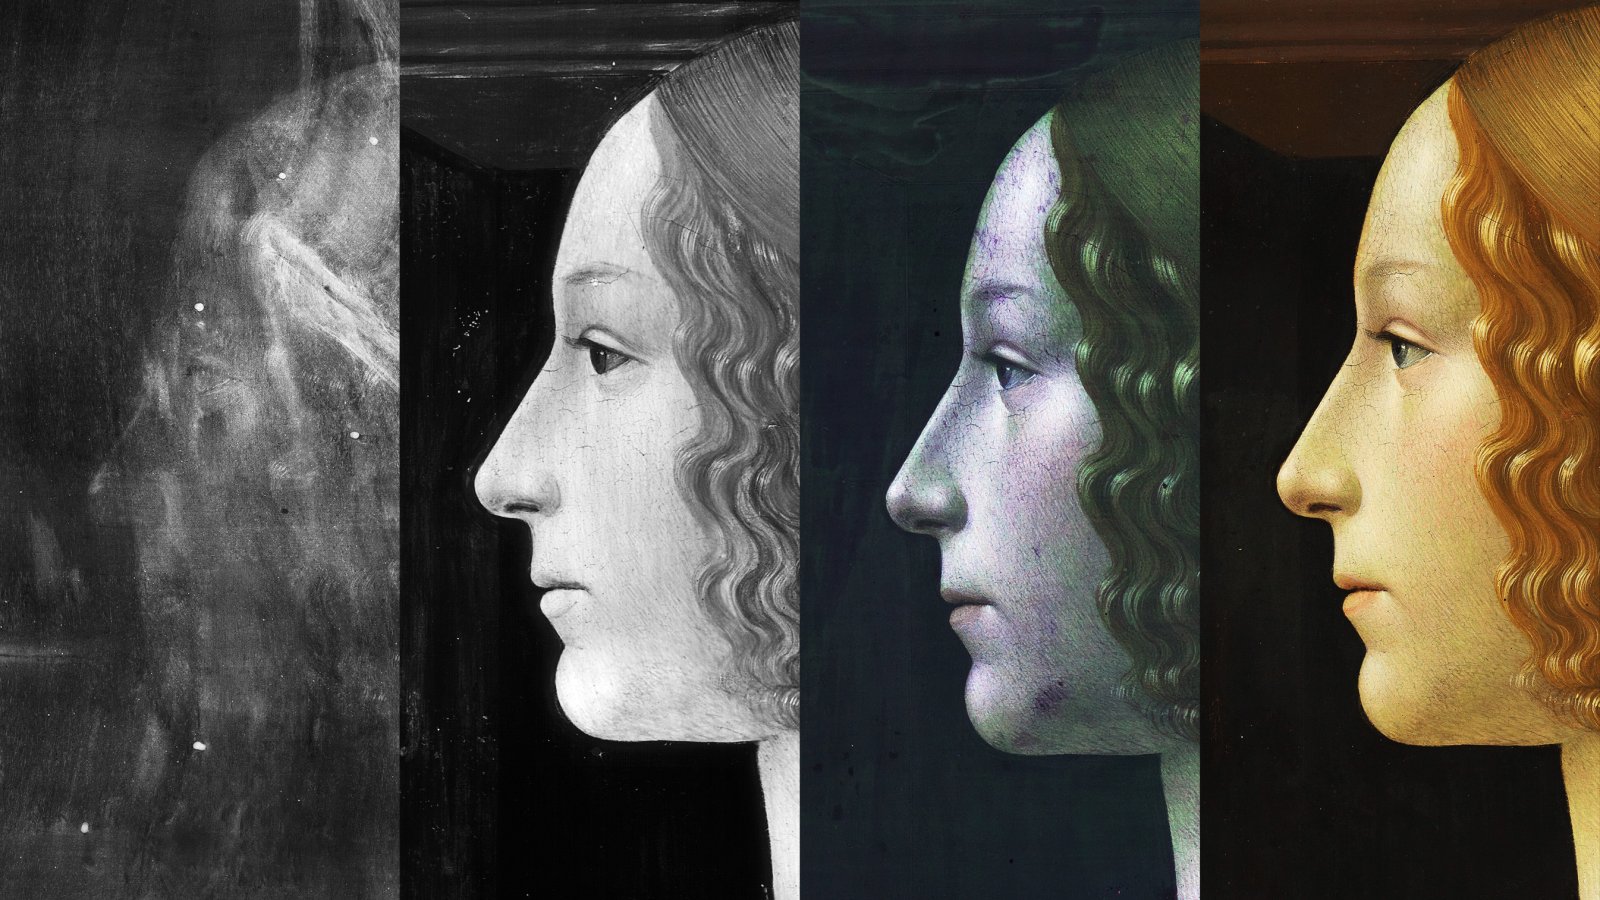 Composición de imágenes técnicas para el estudio de la obra de Ghirlandaio "Retrato de Giovanna degli Albizzi Tornabuoni"